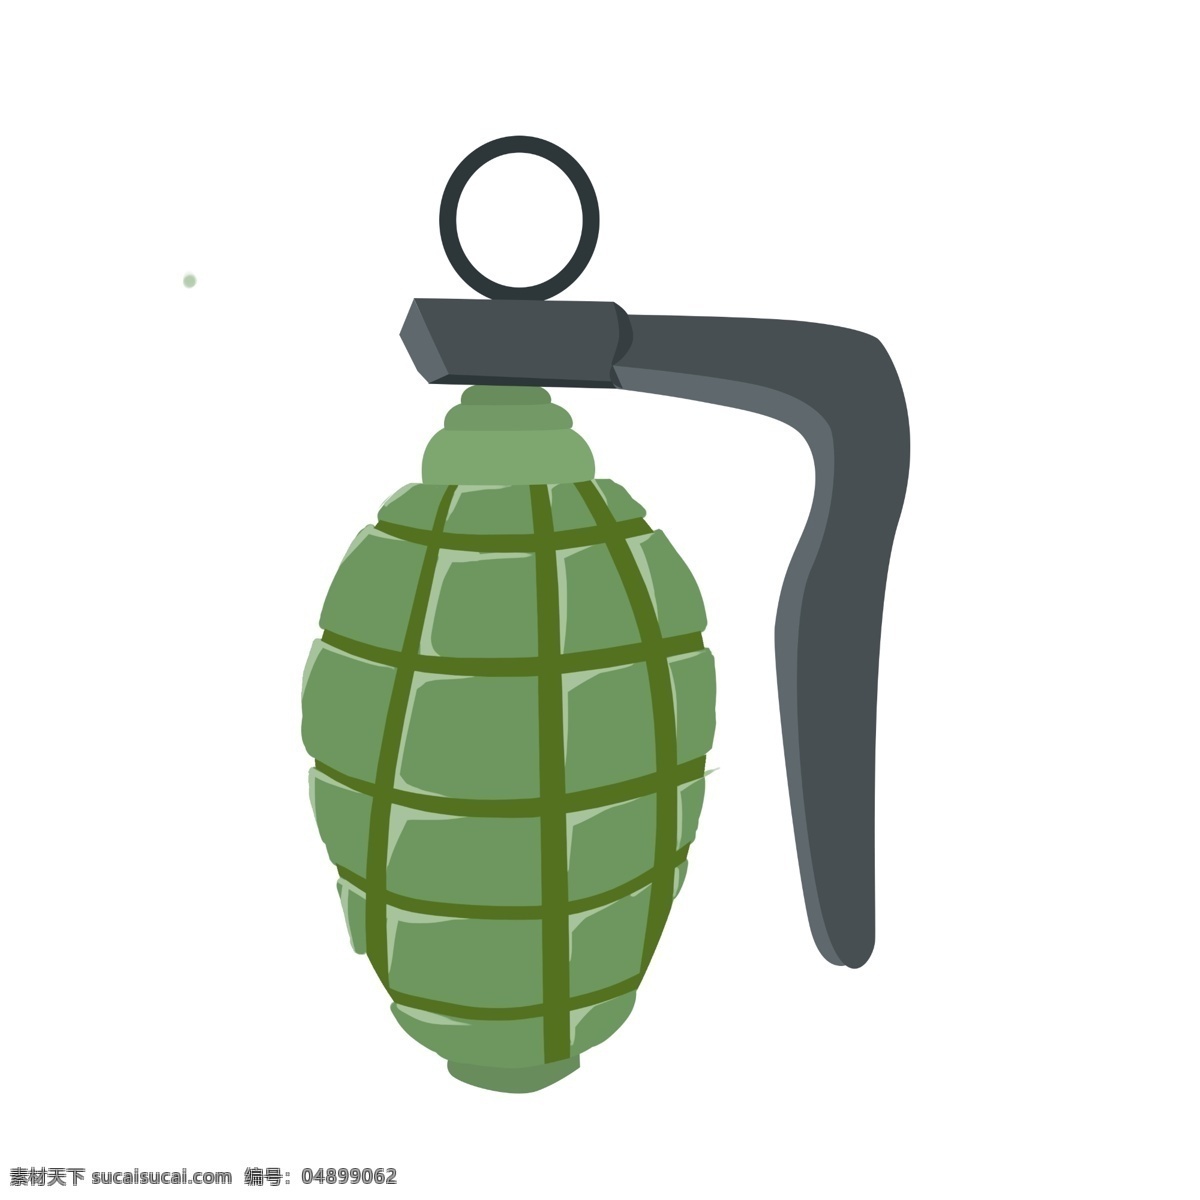 卡通 绿色 手榴弹 插画 手榴弹插画 卡通军事装备 绿色武器 卡通手榴弹 创意军事插画 炸弹 黑色的手柄